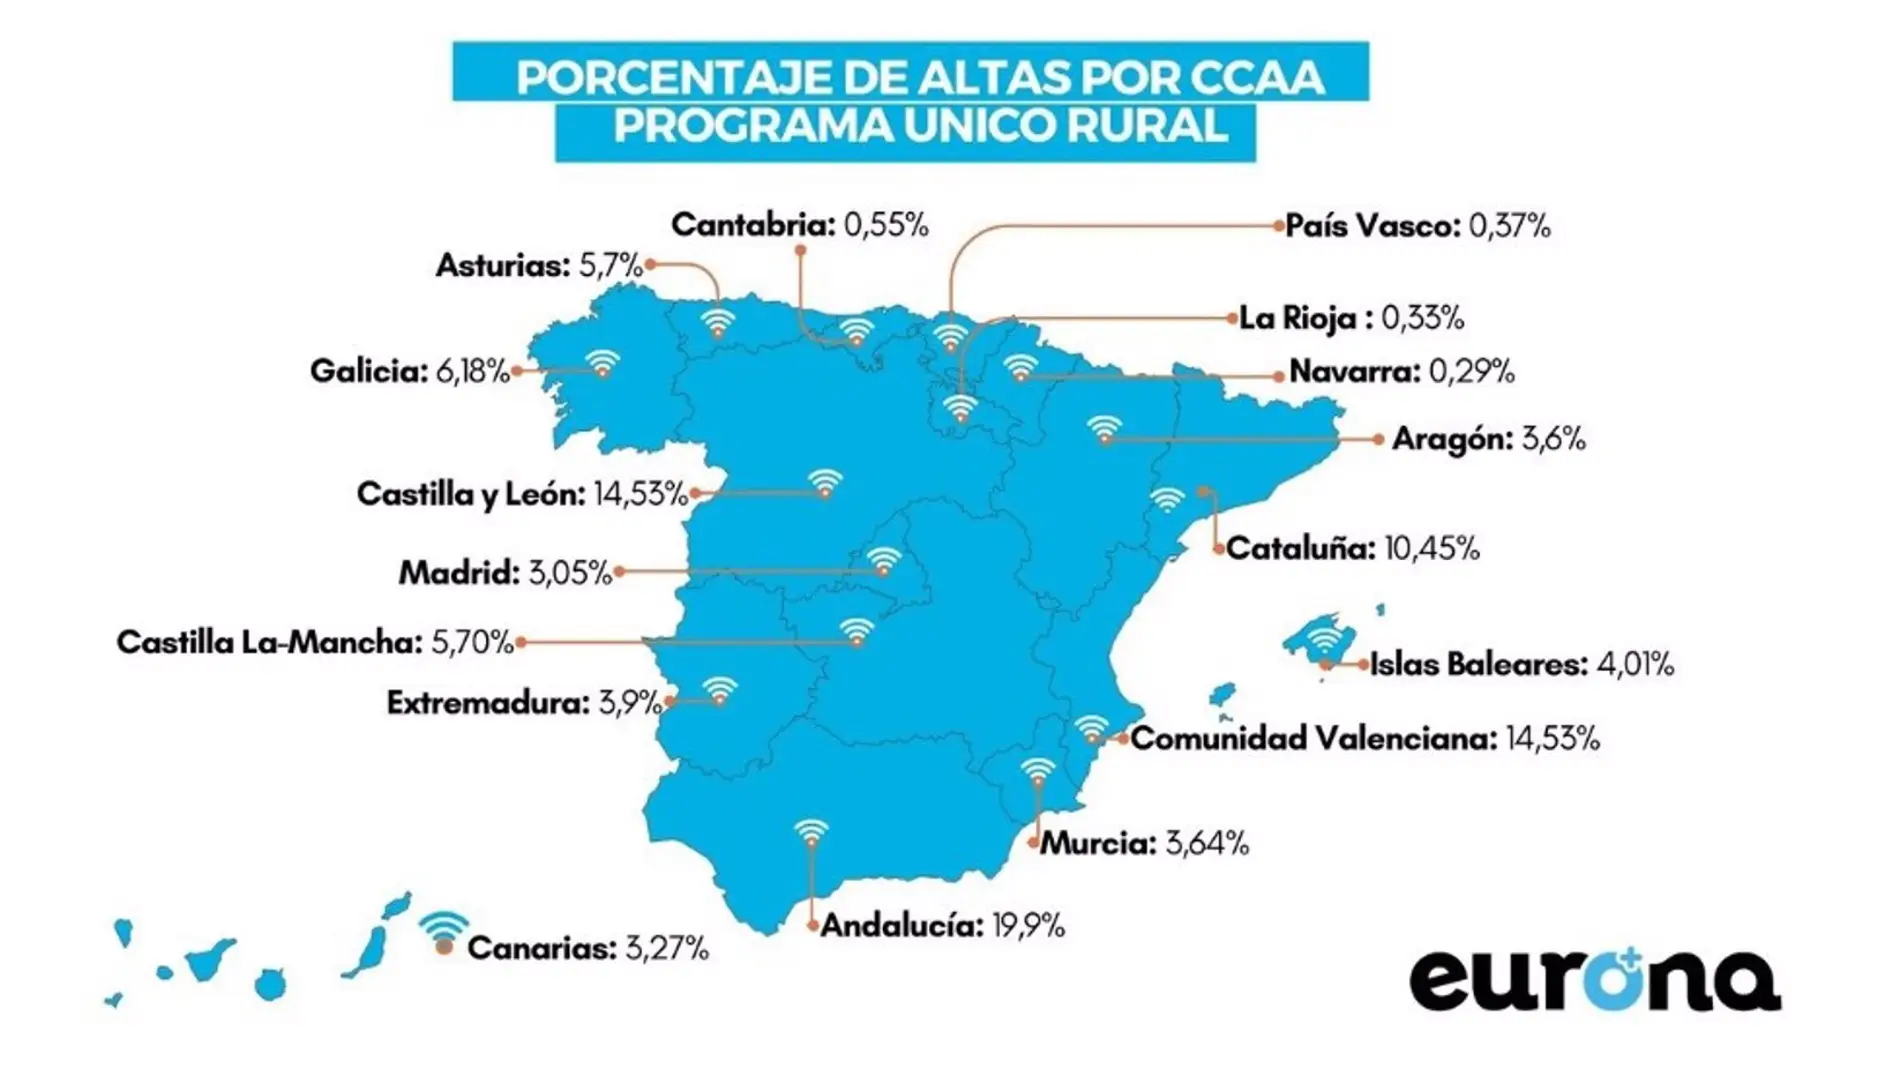 Extremadura contabiliza casi el 5% de las altas dentro del programa Único rural